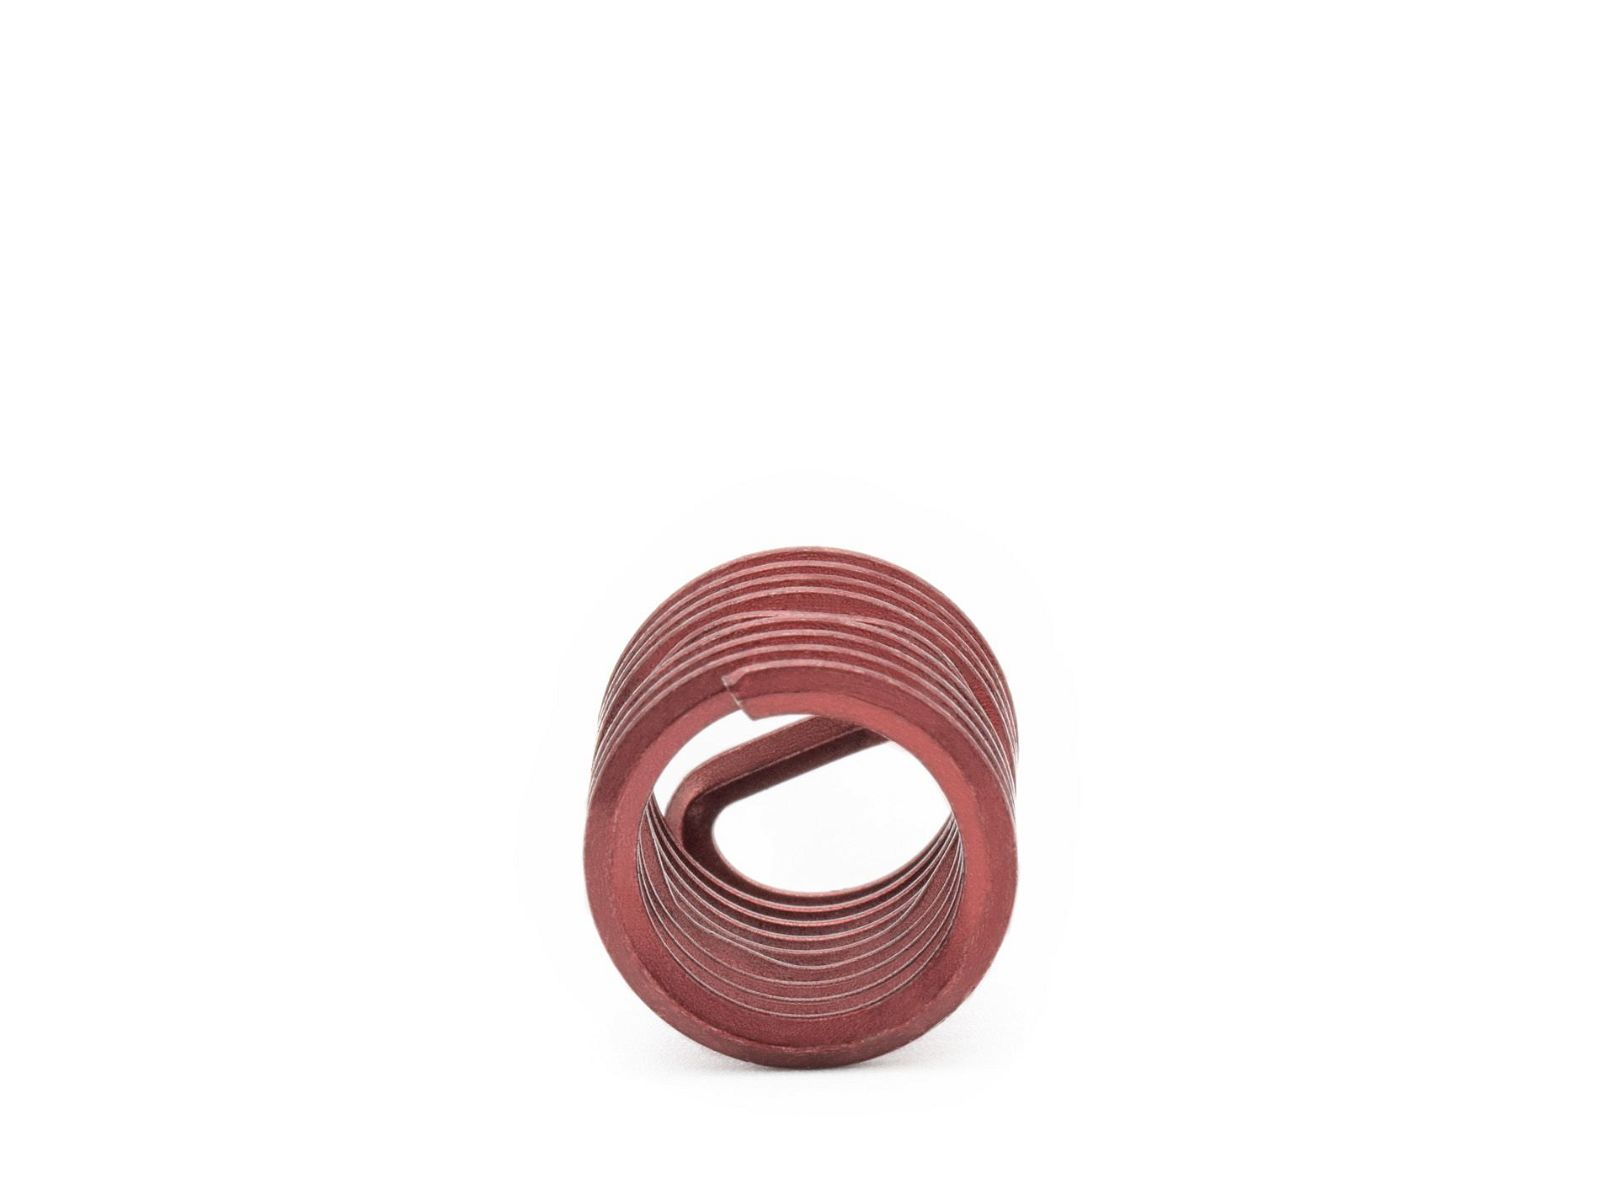 BaerCoil Wire Thread Inserts BSW 3/8 x 16 - 1.5 D (14.29 mm) - screw grip (screw locking) - 100 pcs.